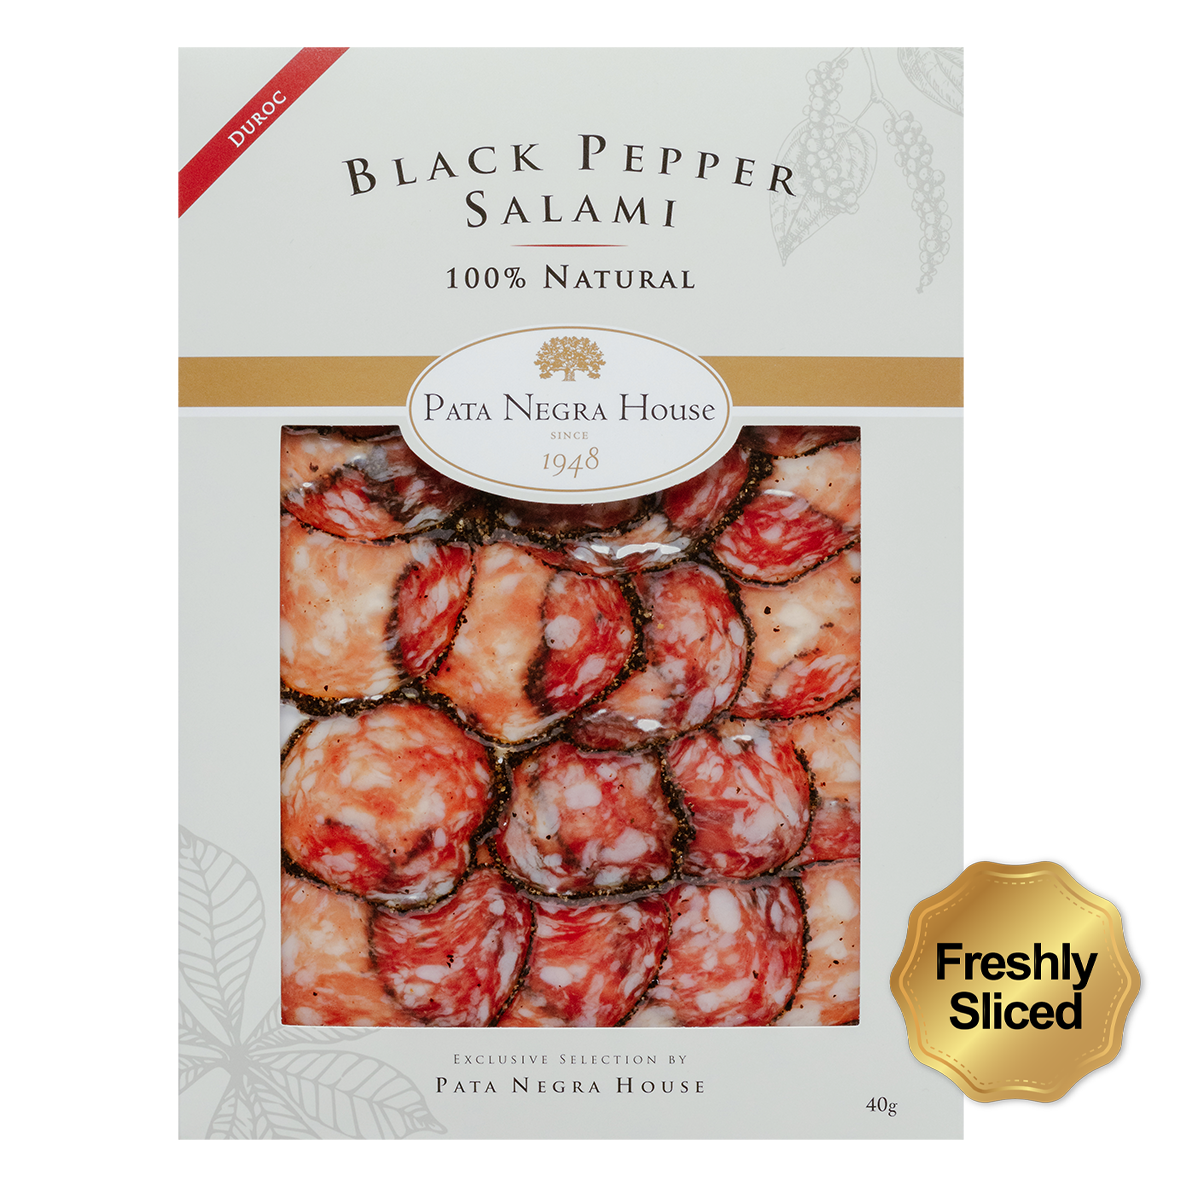 Black Pepper Salami - 100% Natural